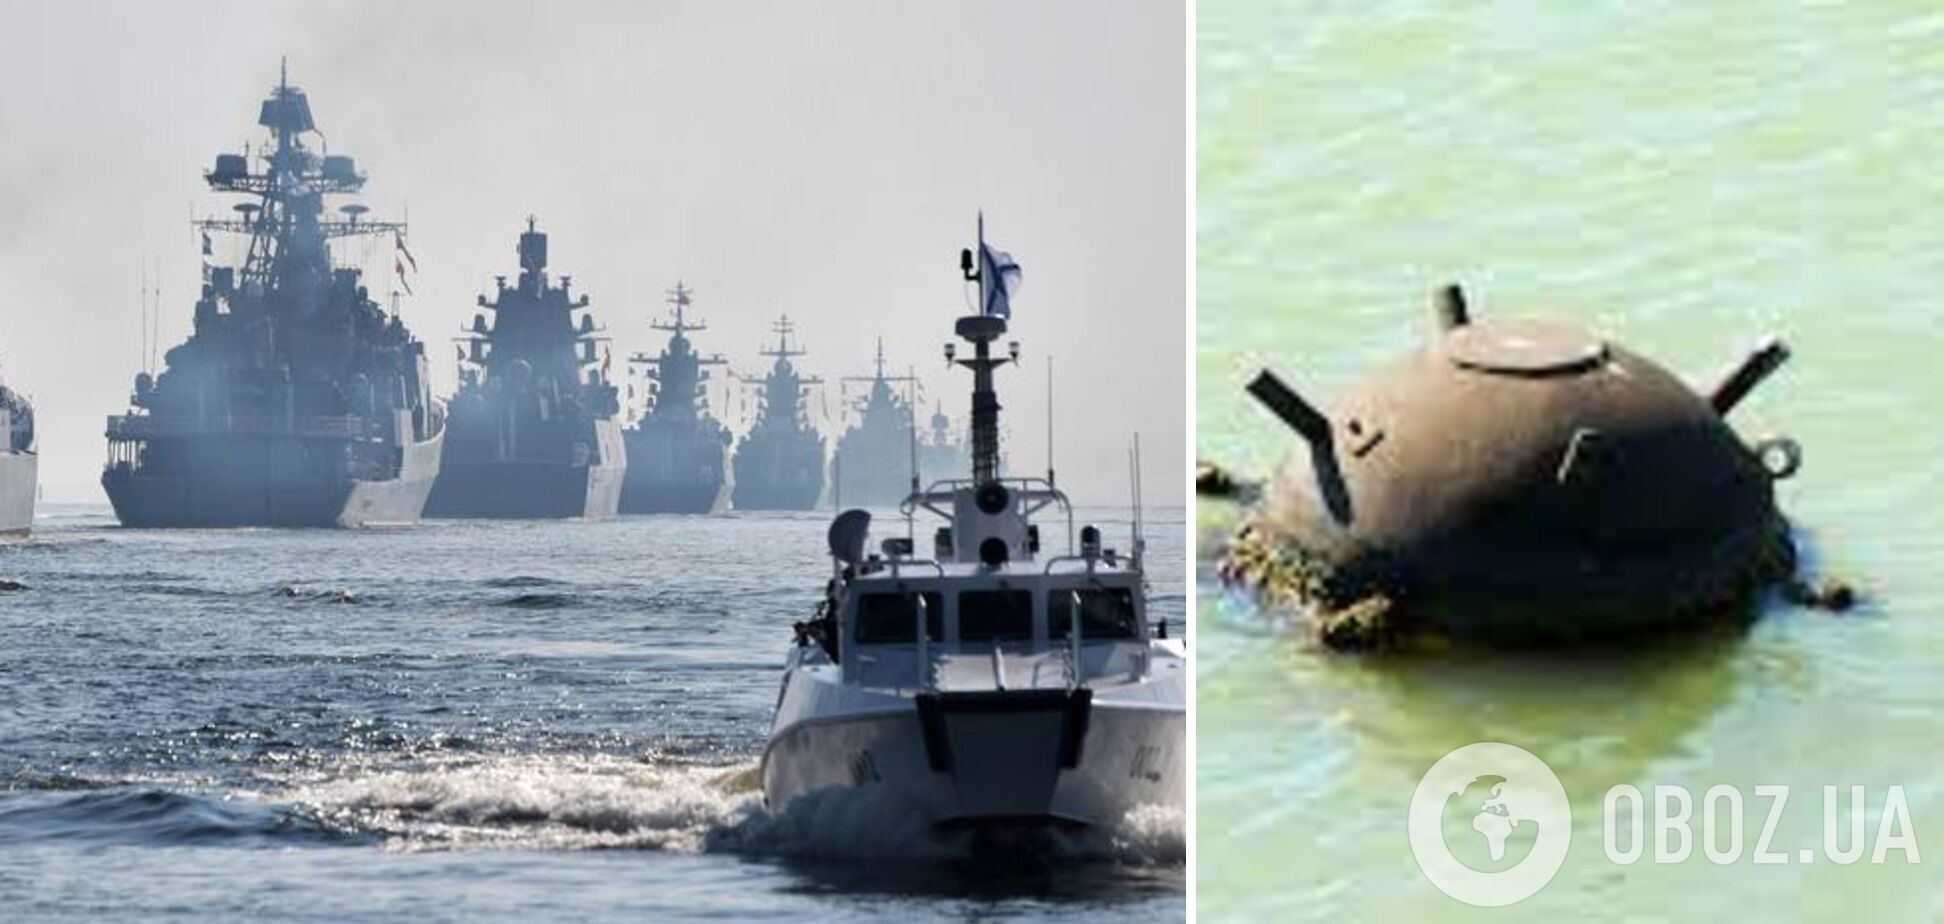 Росія влаштувала провокації у Чорному морі, використовуючи захоплені у 2014 році у Севастополі морські міни - МЗС